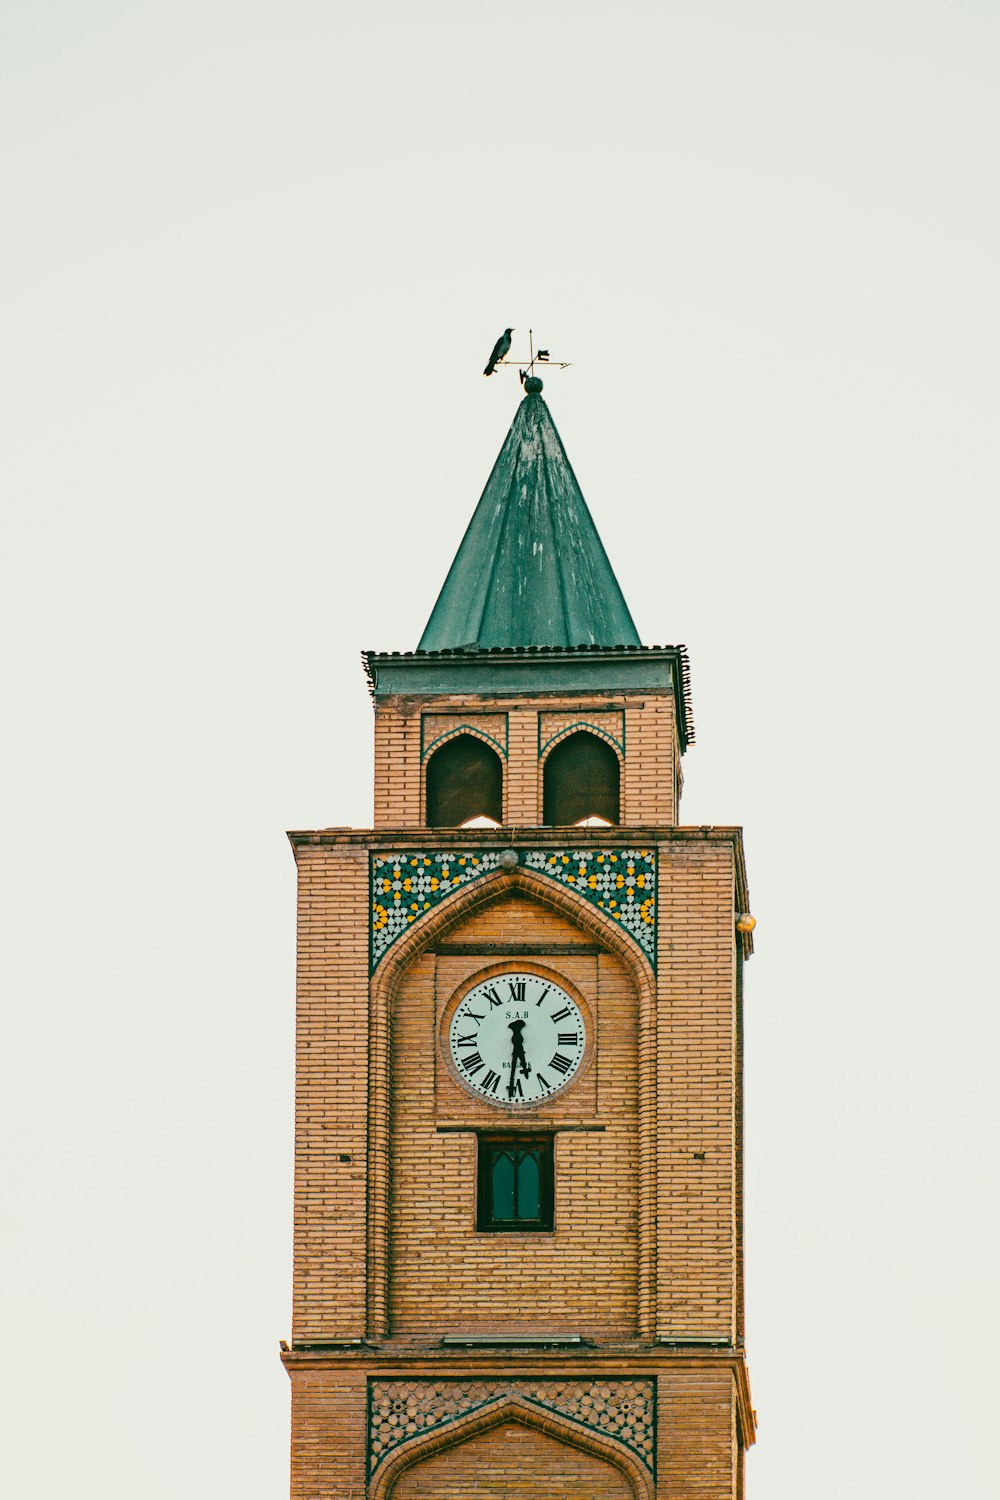 Un reloj en una torre